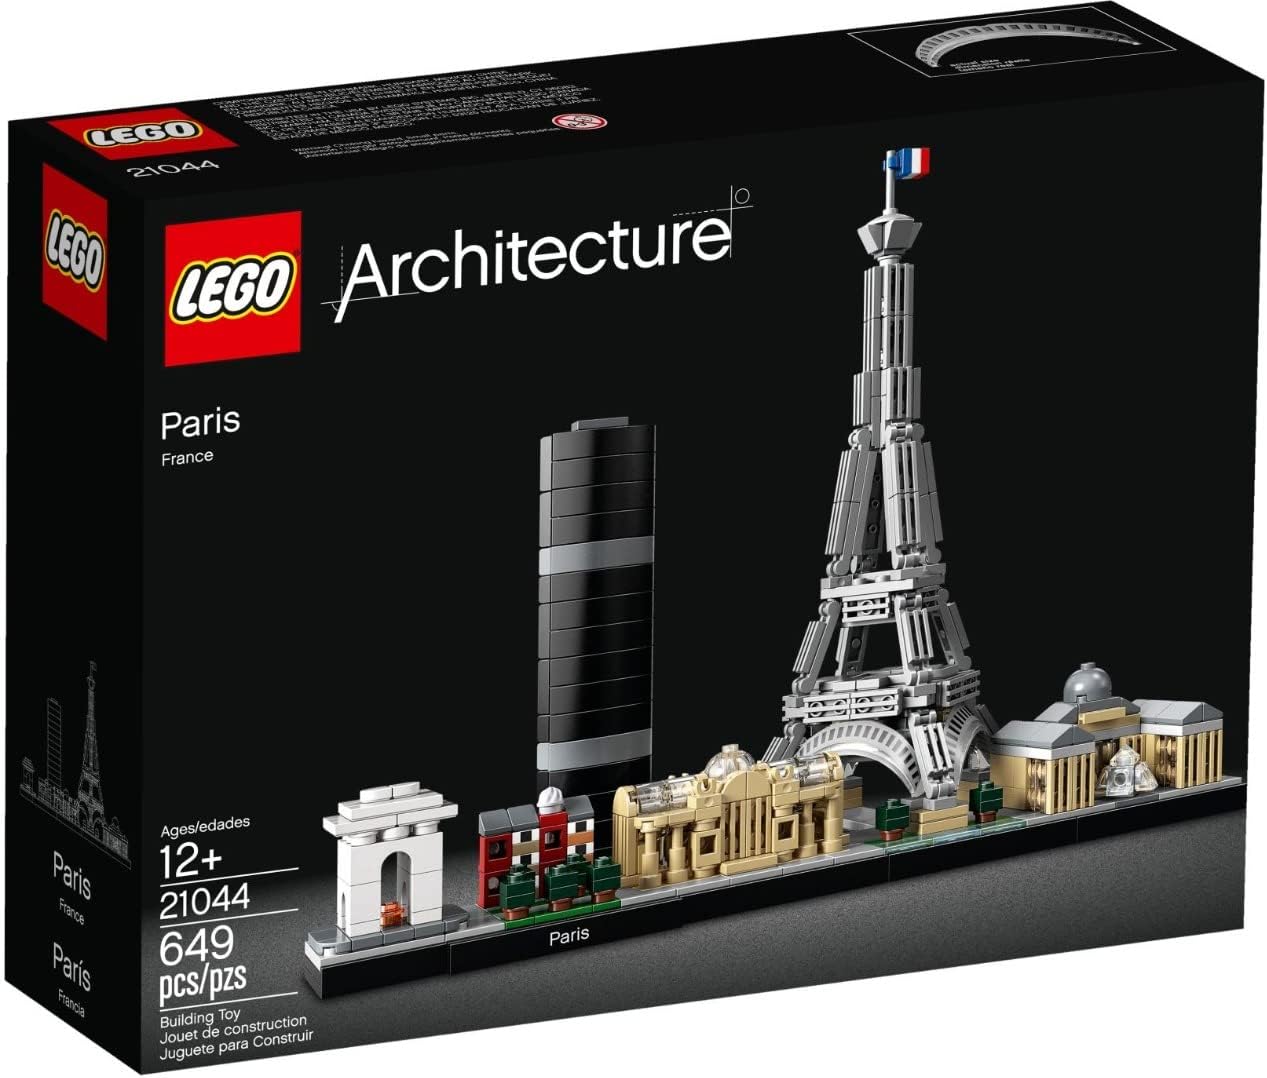 LEGO 21044 Architecture Paris, Modellbausatz mit Eiffelturm und Louvre-Modell, Skyline-Kollektion für nur 31,87€ inkl. Versand